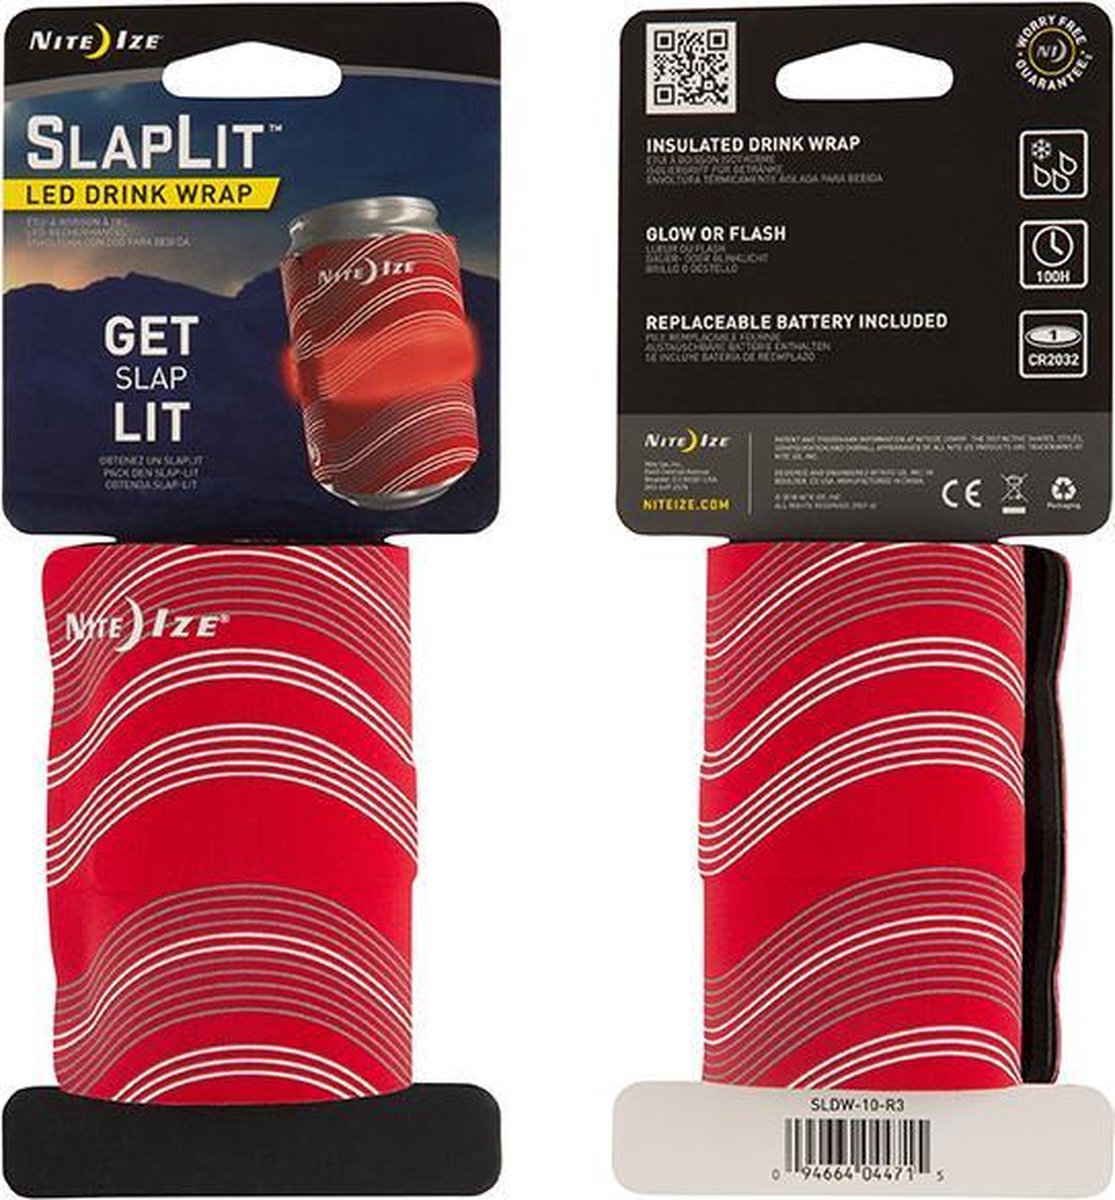 NITE IZE SlapLit Isolating LED Drink Wrap - Red